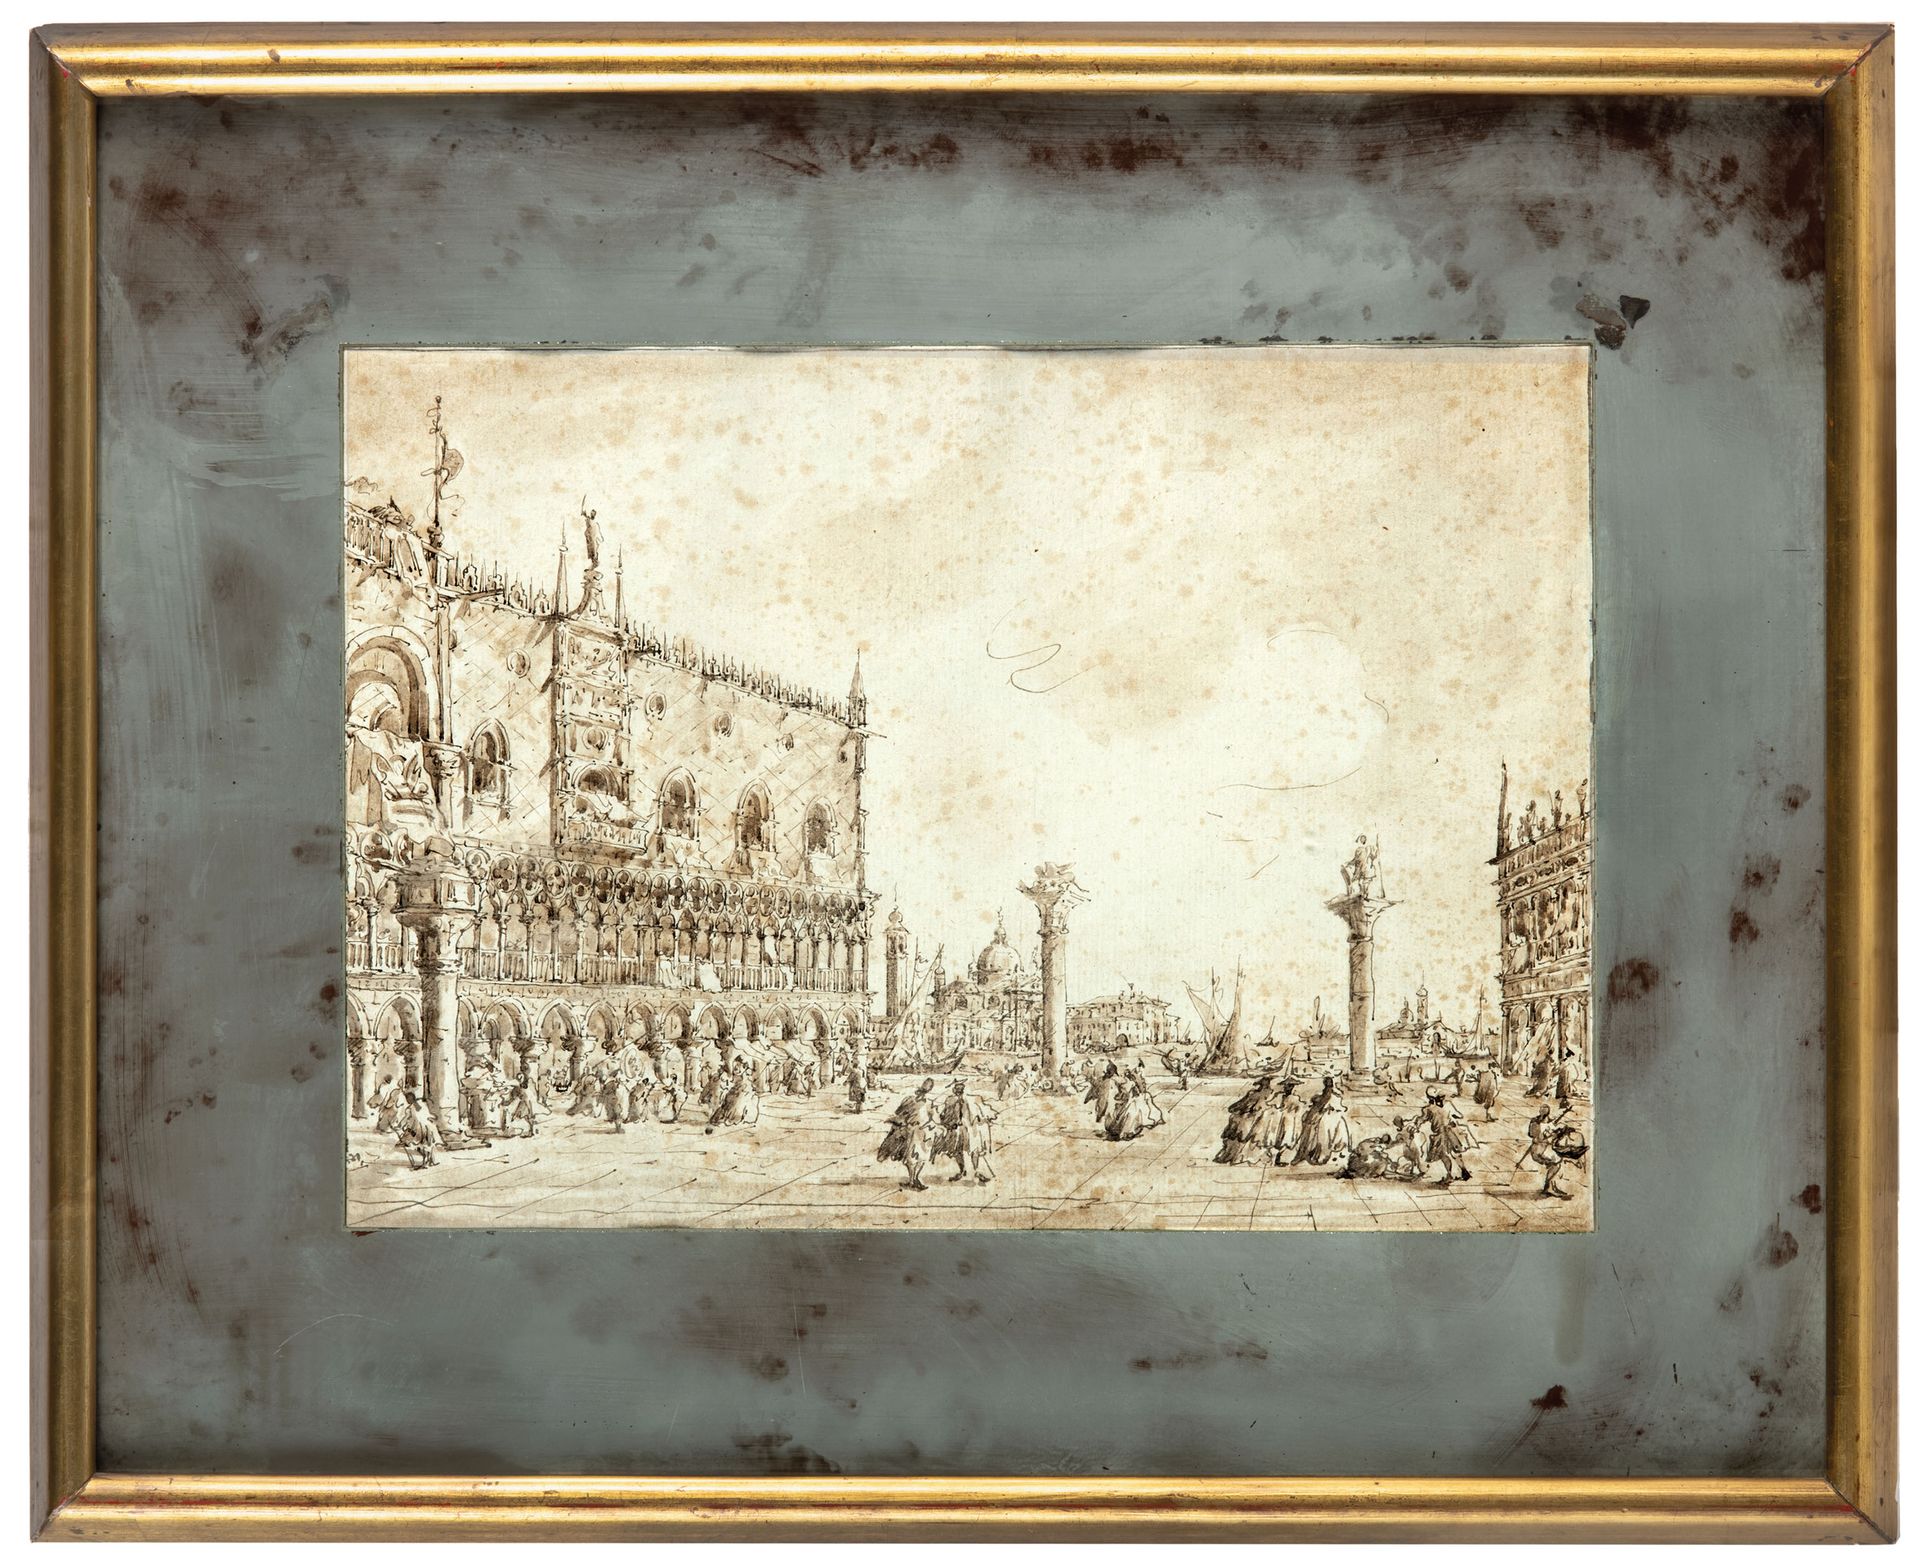 FRANCESCO GUARDI (maniera di) (Venice, 1712 - 1793)
View of the Rialto
China on &hellip;